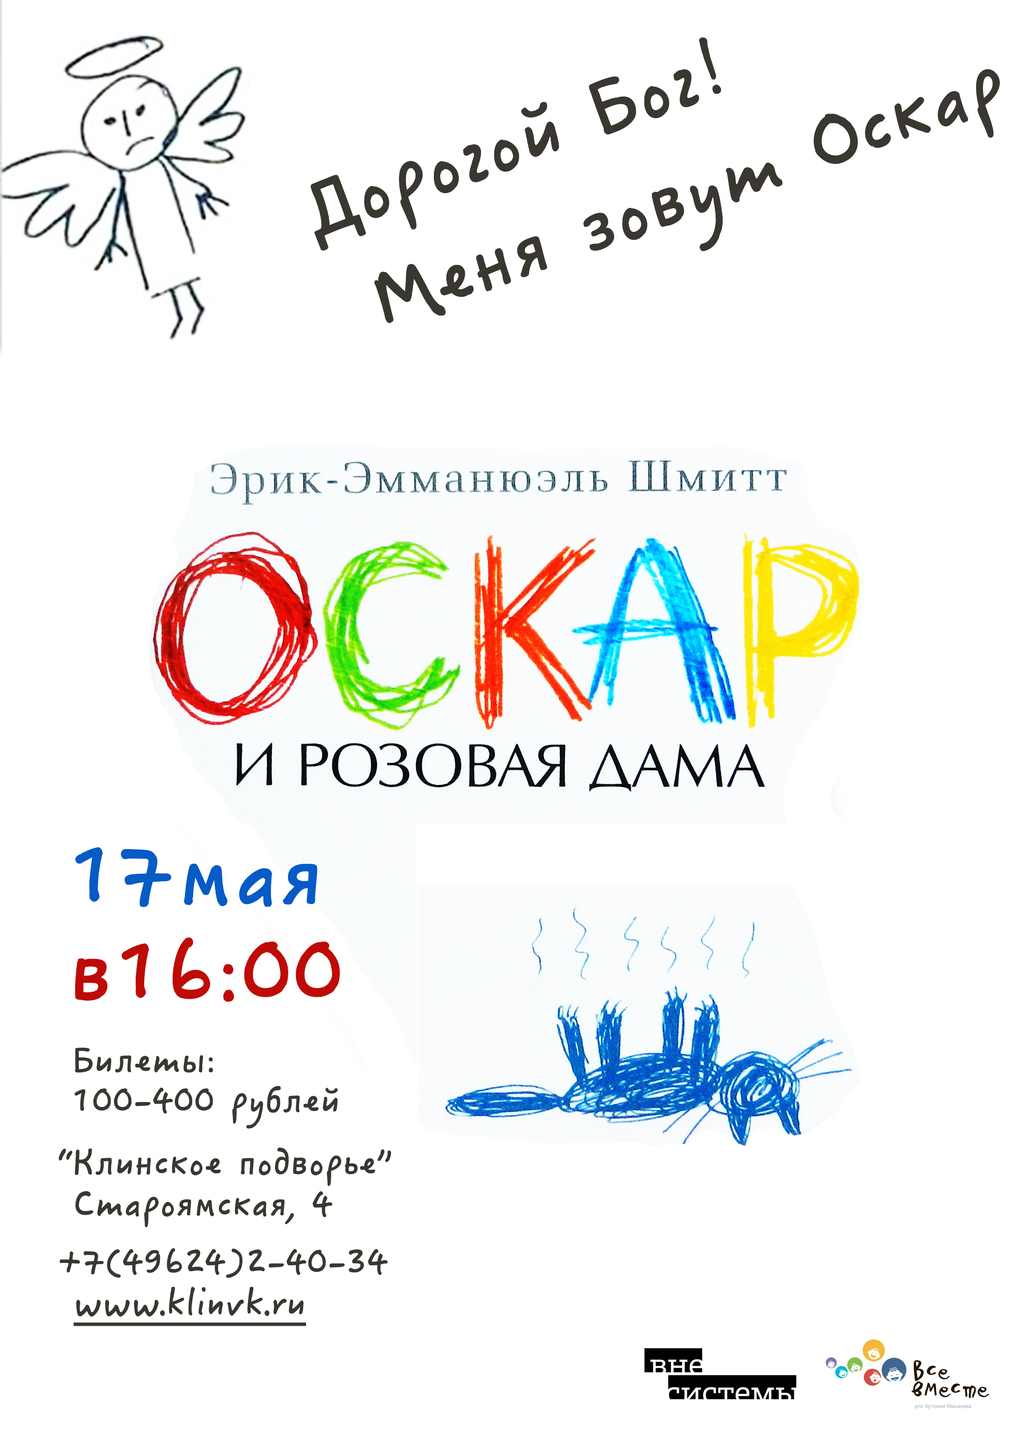 oskar2-1024